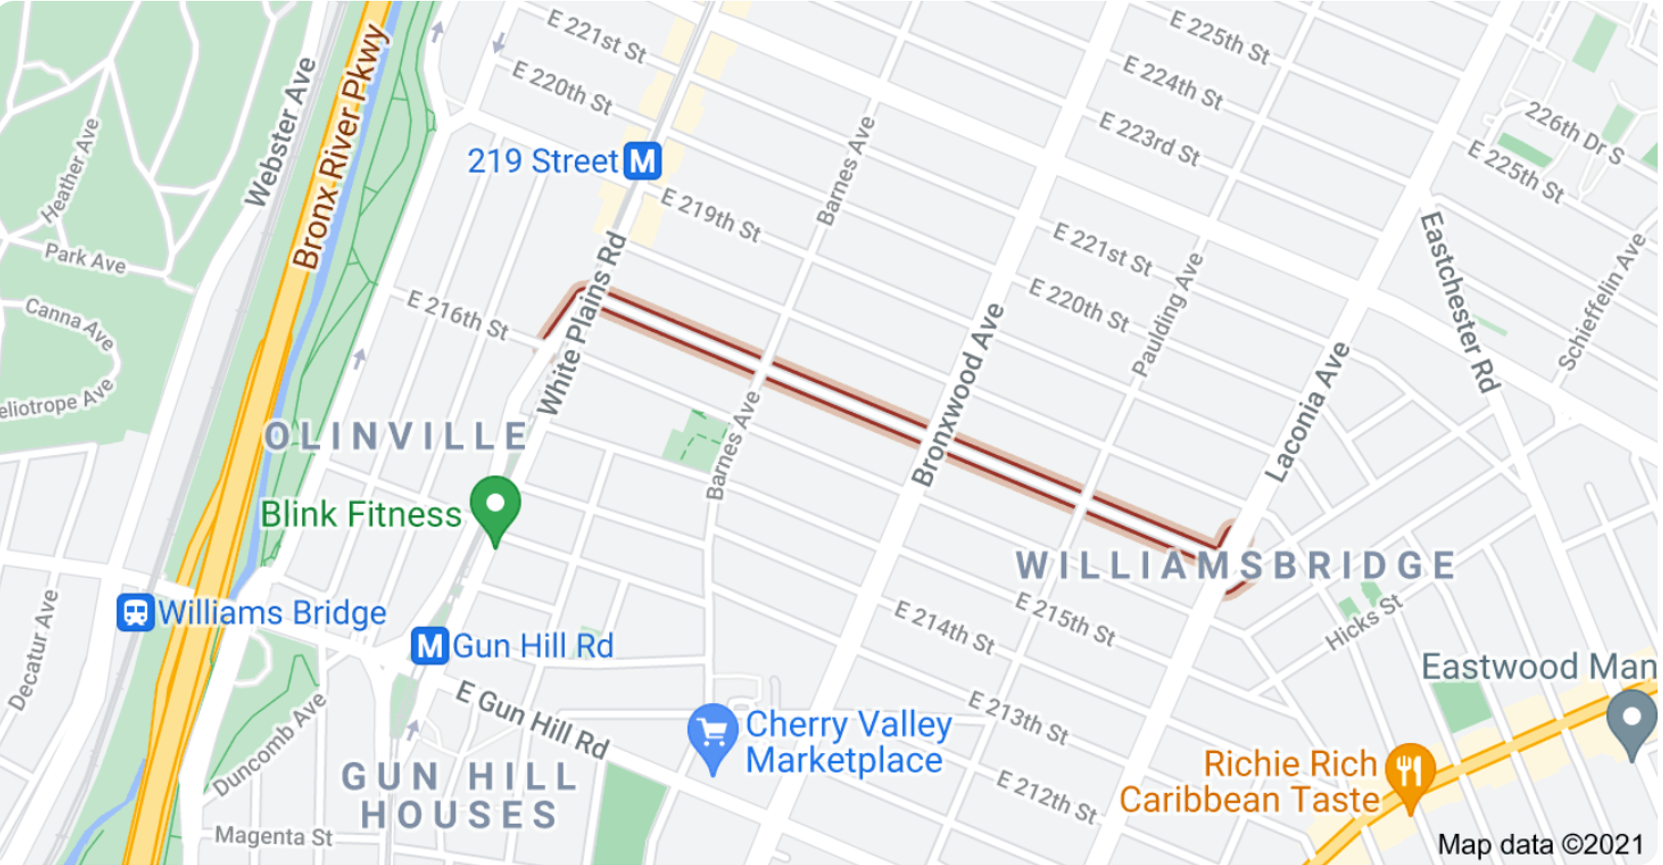 Google Map Image of E 217 Street, Bronx, NY 10467